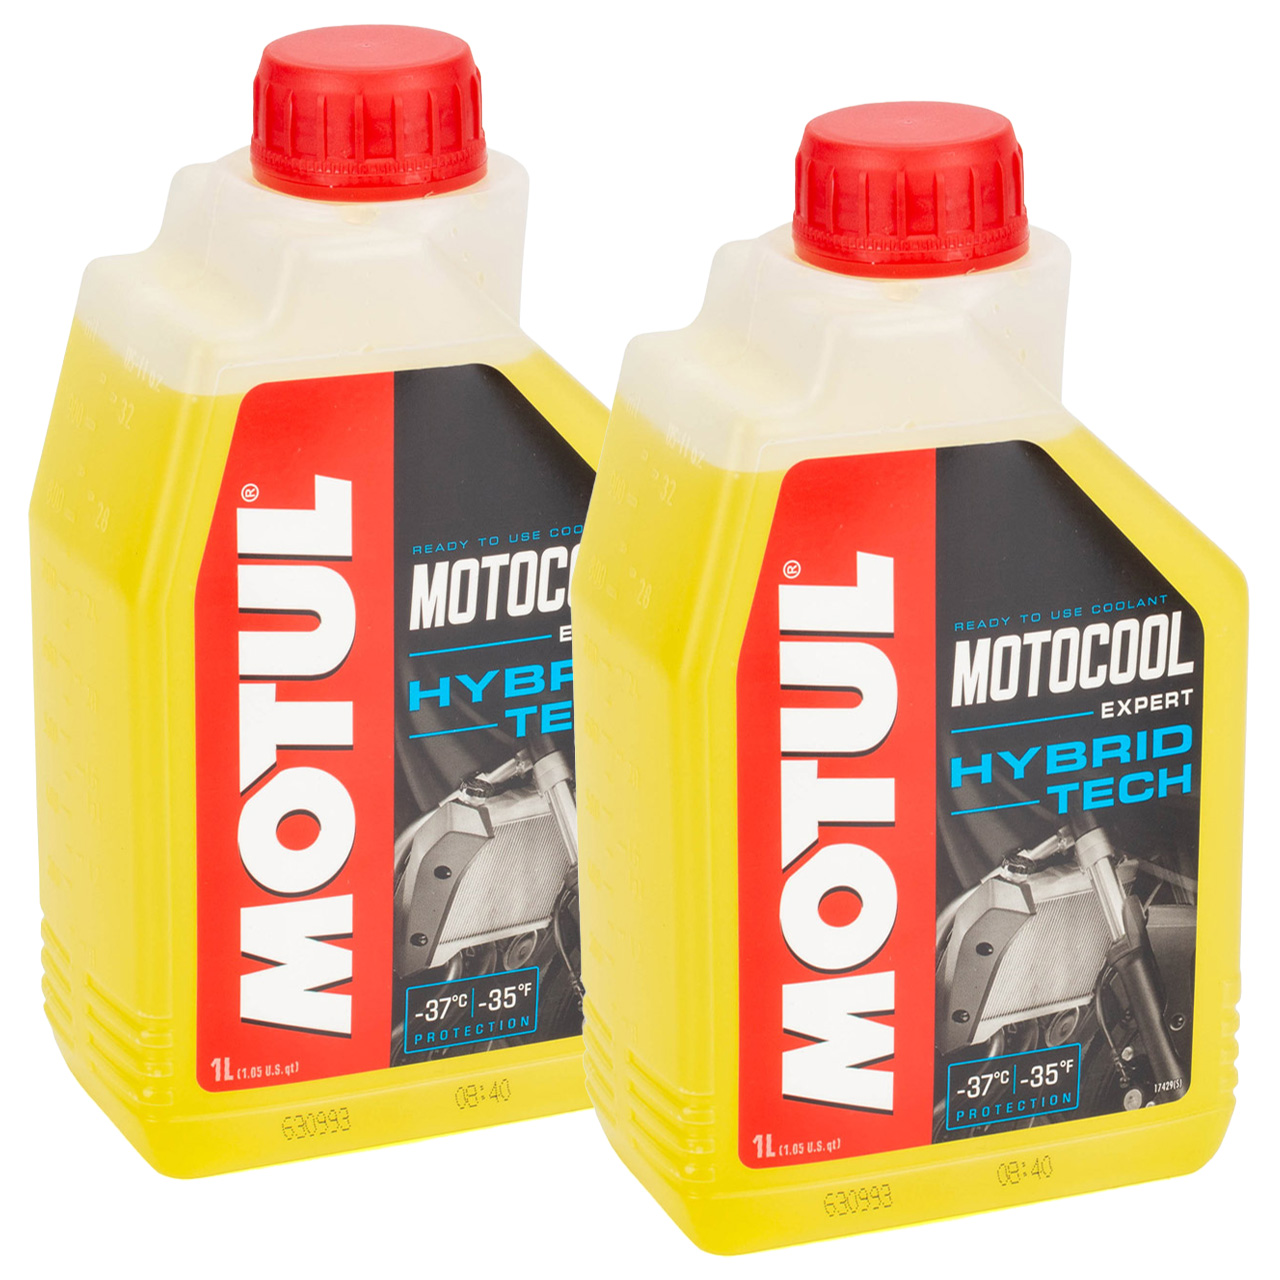 2L 2 Liter MOTUL 105914 MOTOCOOL Expert HYBRID TECH Motorrad Kühlerschutz Kühlflüssigkeit